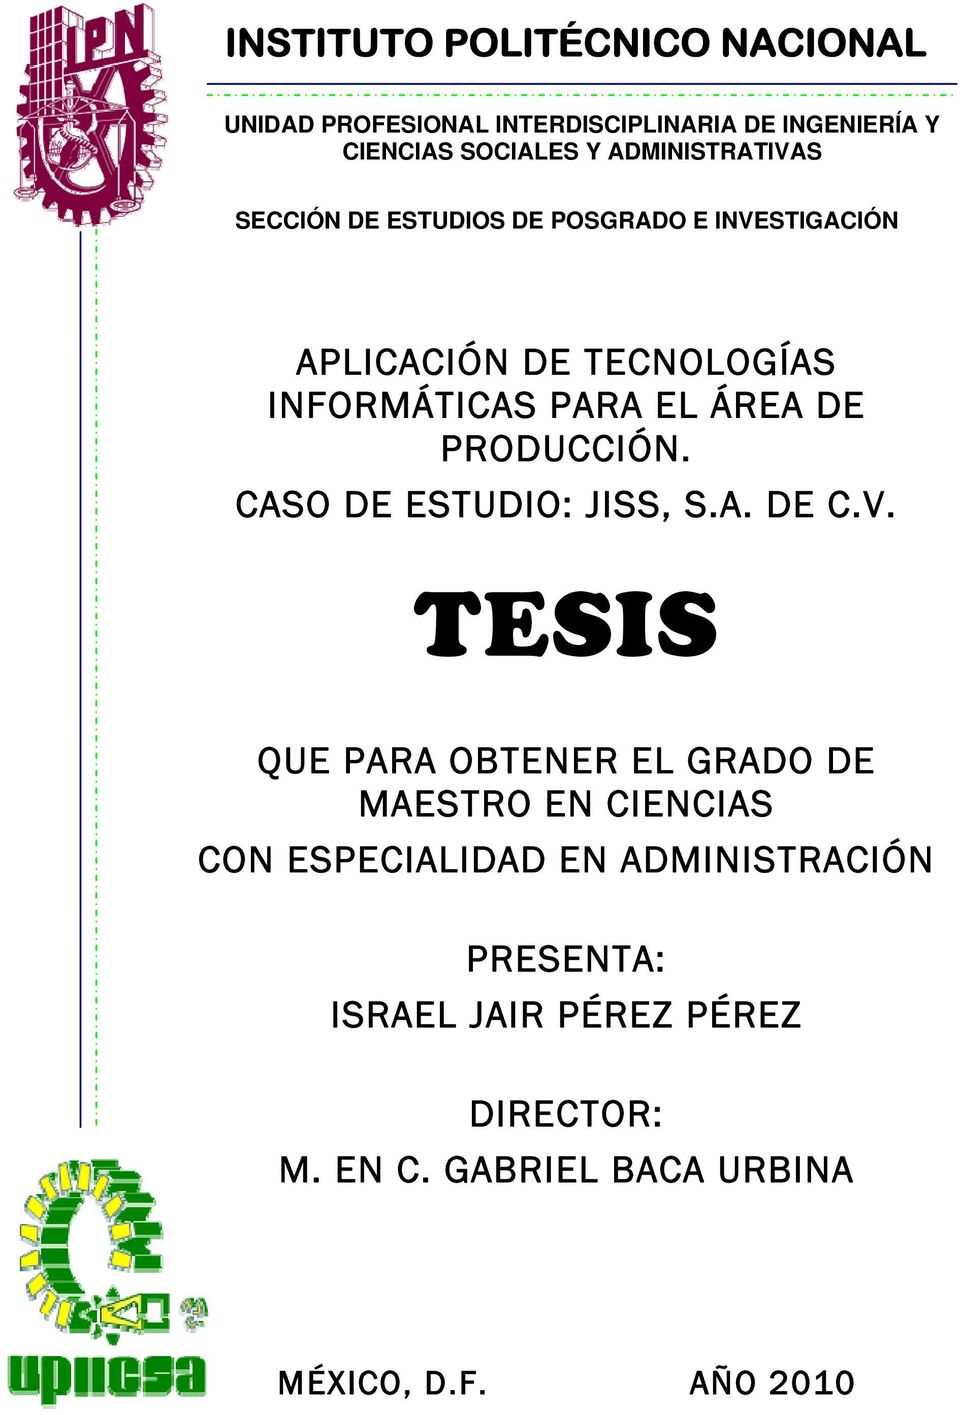 ÁREA DE PRODUCCIÓN. CASO DE ESTUDIO: JISS, S.A. DE C.V.